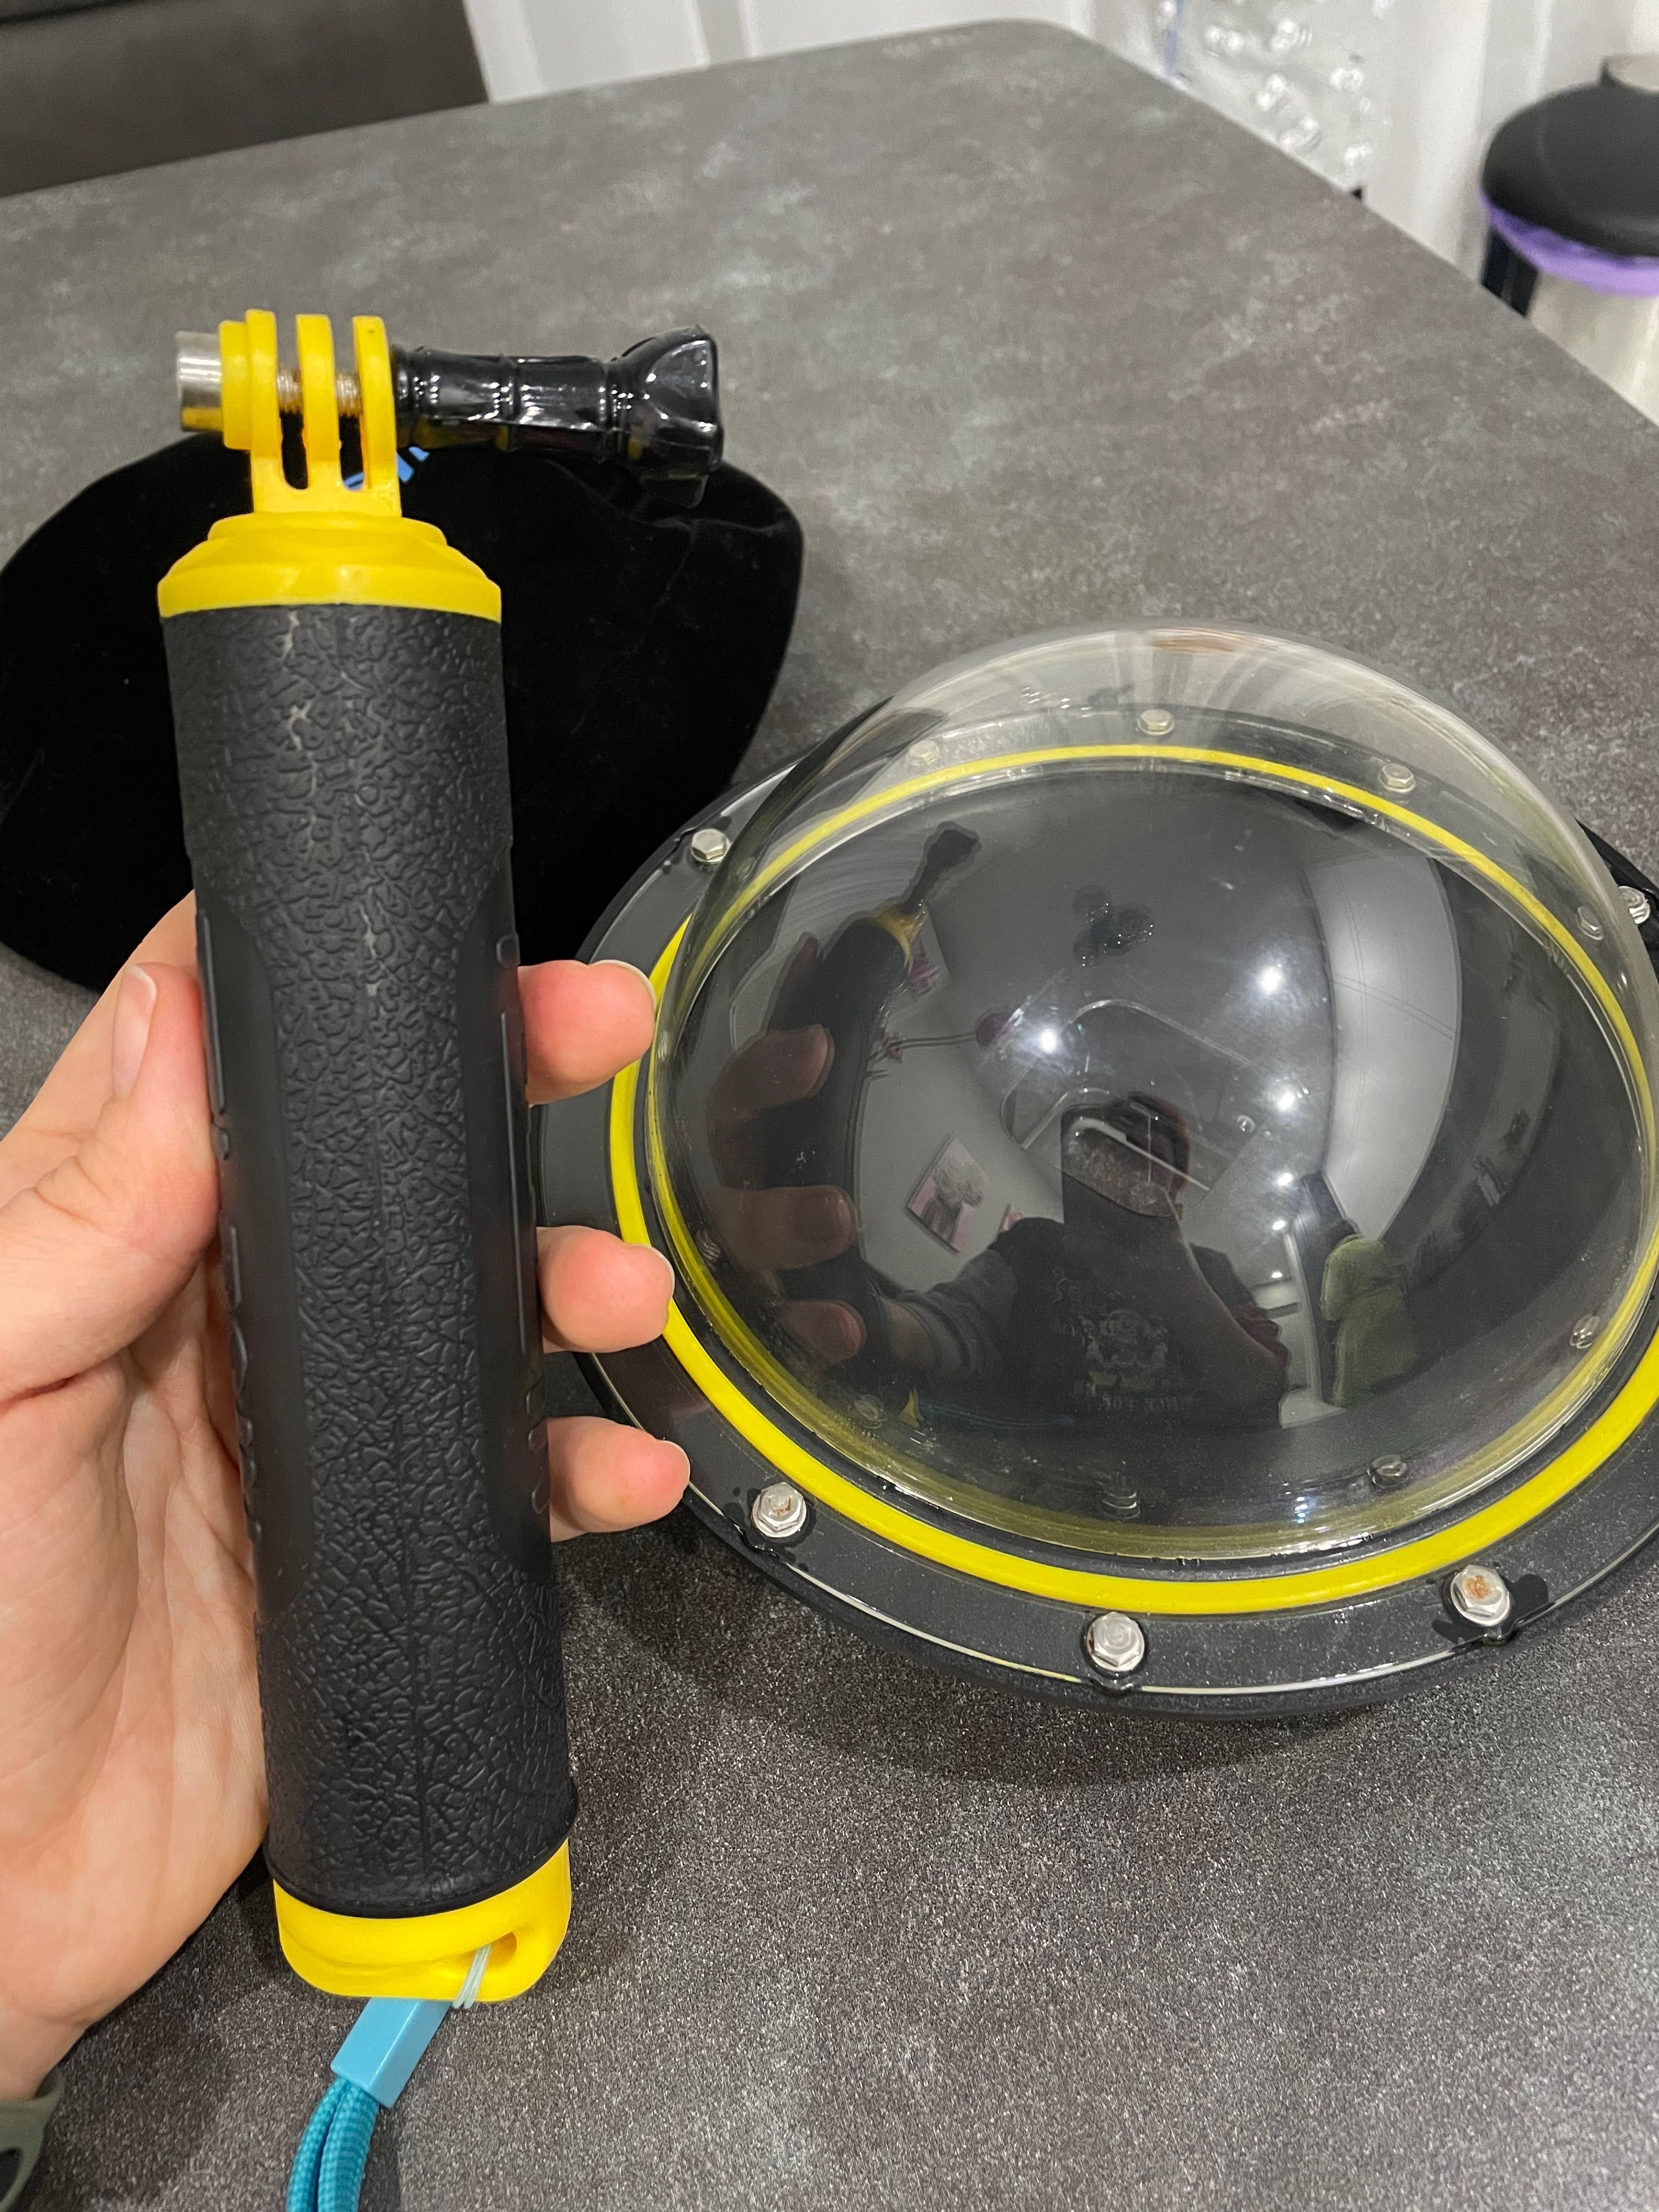 Підводний бокс для GoPro 8 Black Dome Port Telesin (GP-DMP-T08)